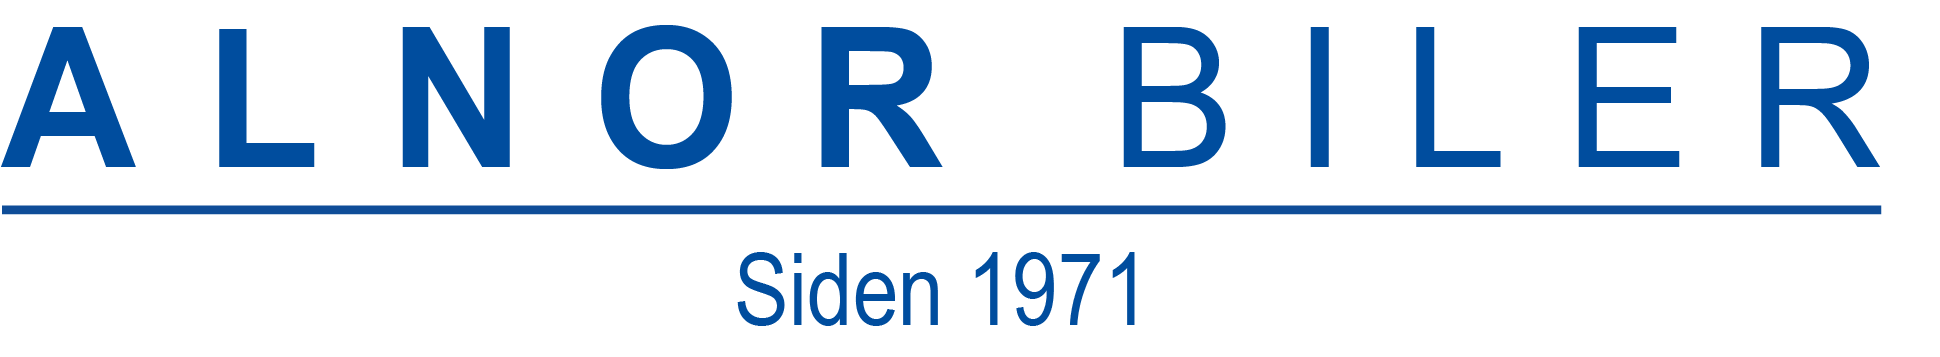 Alnor Biler logo